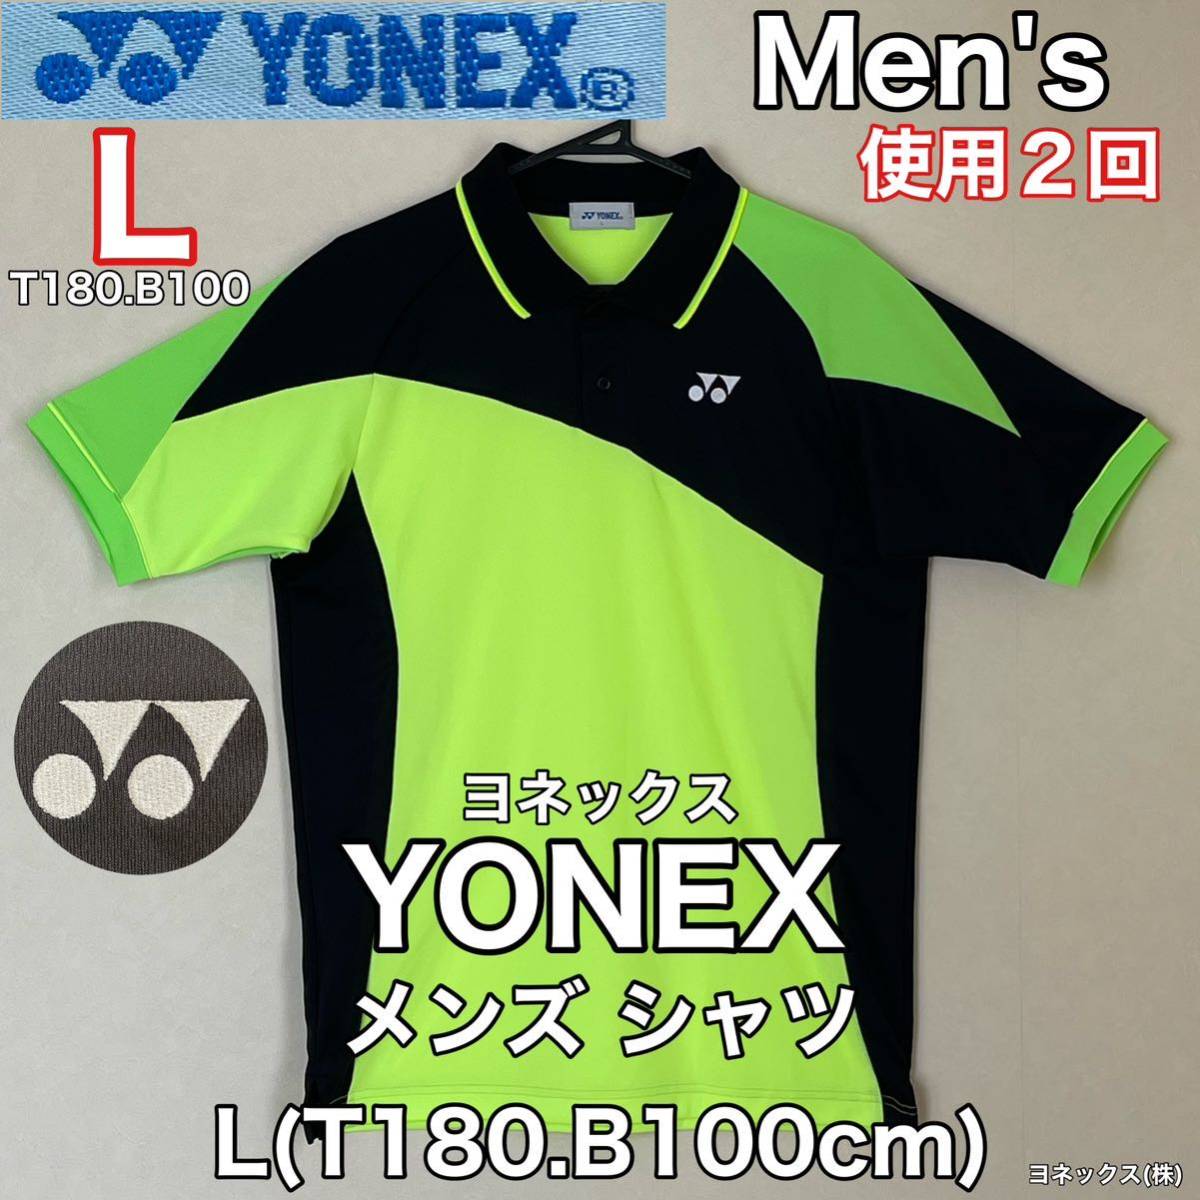 超美品 YONEX(ヨネックス)メンズ シャツL(T180.B100cm)ブラック グリーン 使用2回 半袖 ドライ ゴルフ テニス スポーツ  アウトドア